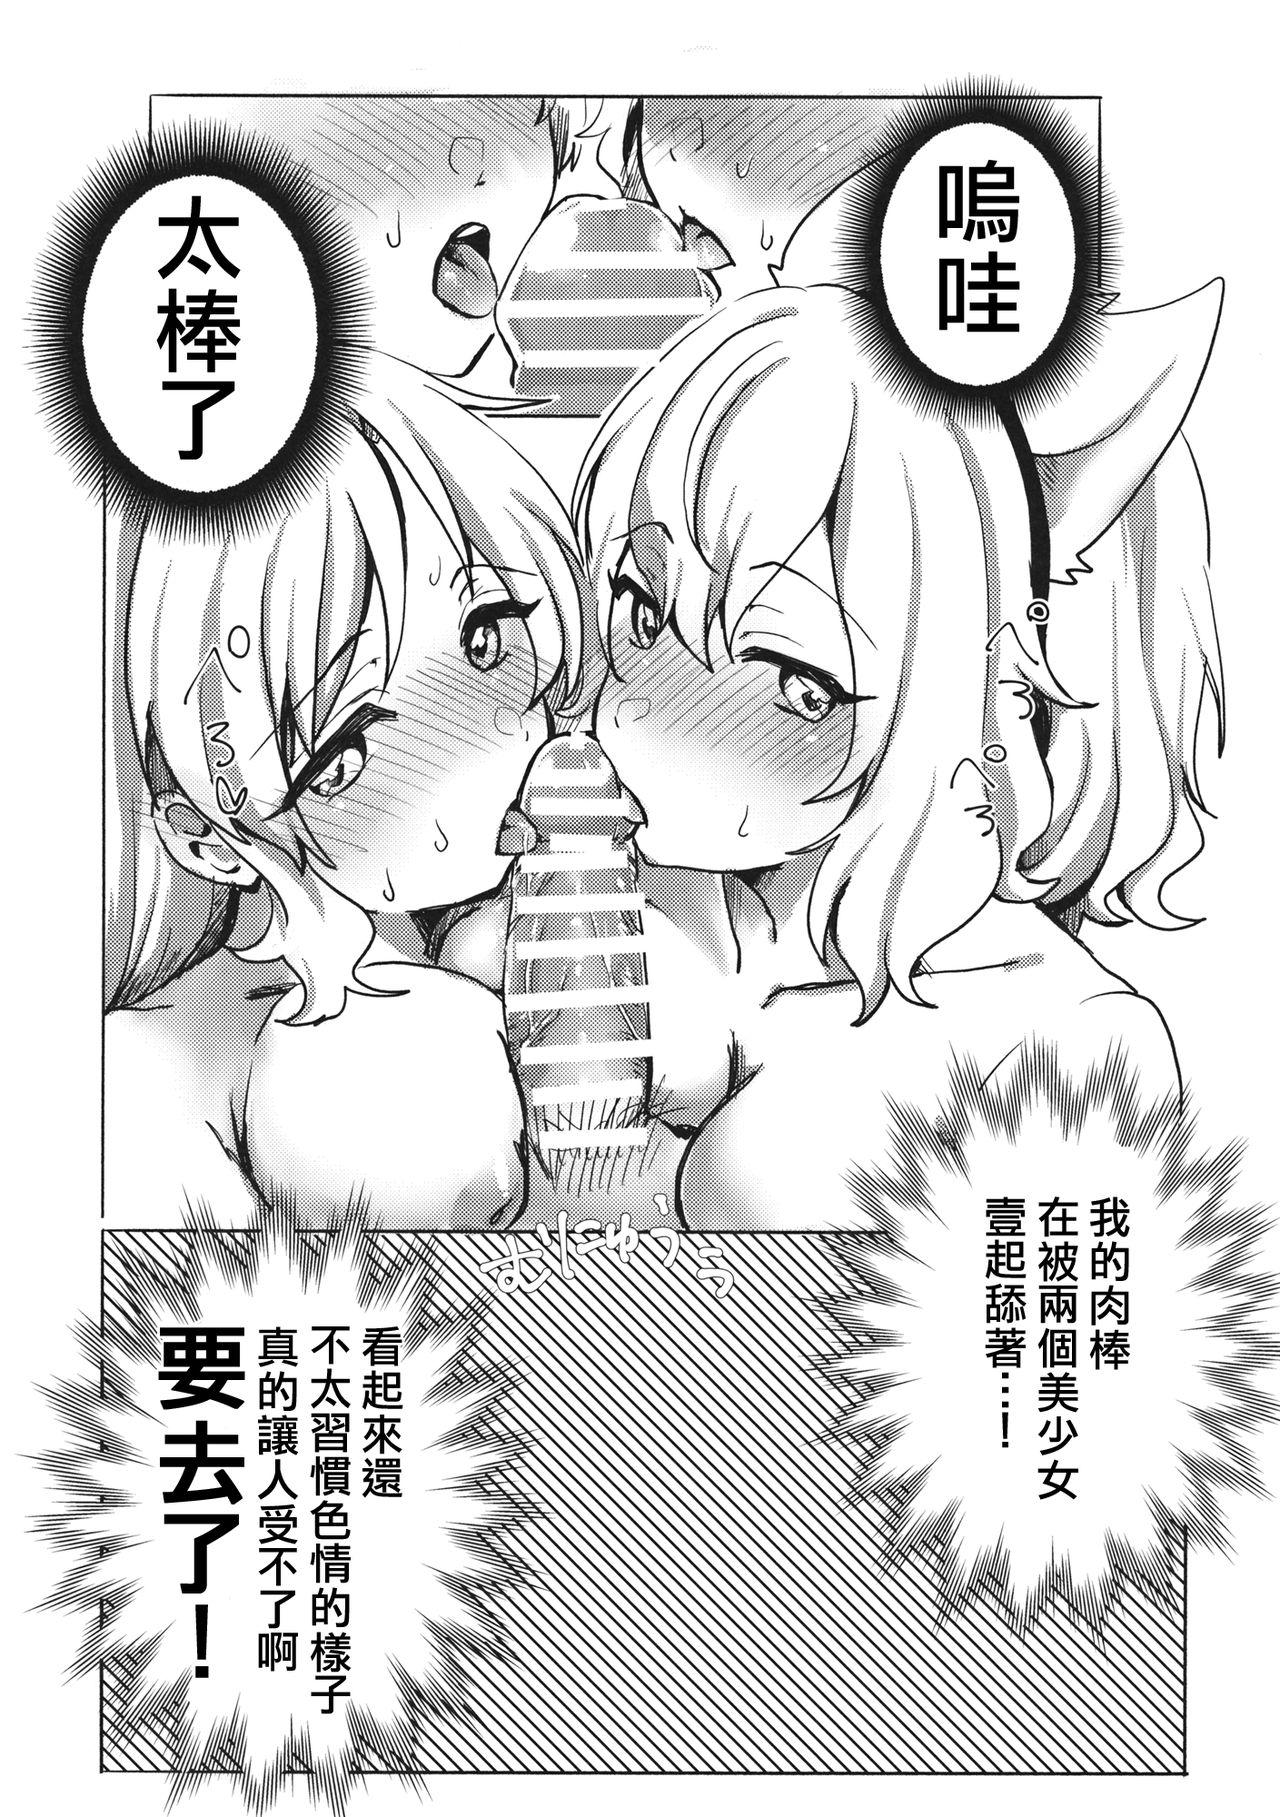 Celebrity Sex Scene Miko vs Okina vs Darkrai - Touhou project She - Page 9